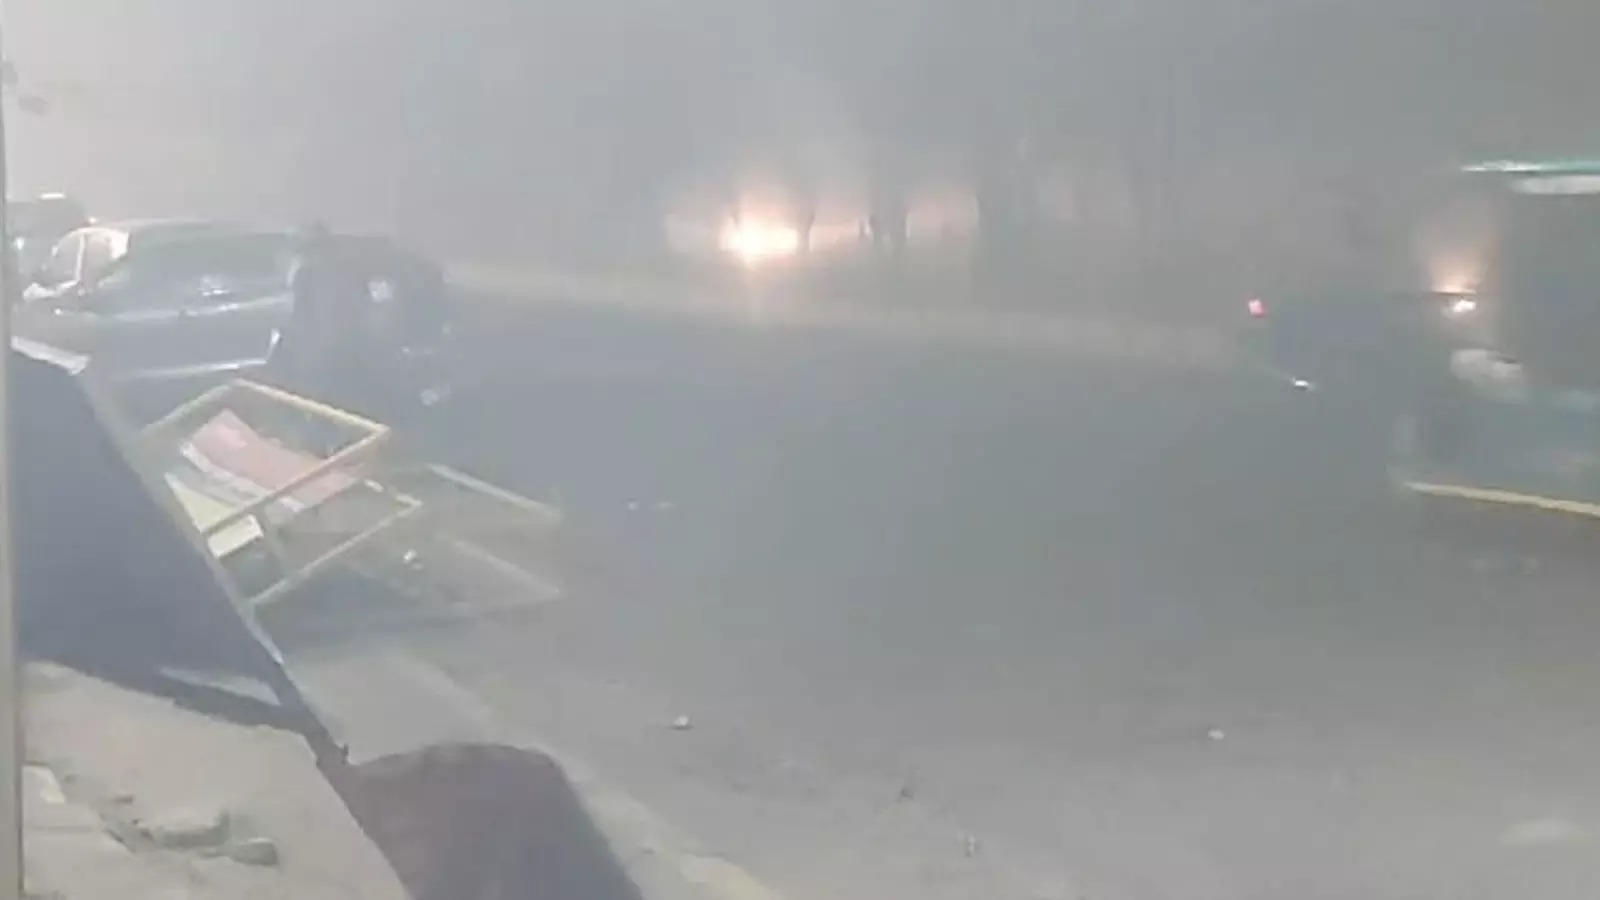 नोएडा-गाजियाबाद में इतनी तेज धूल भरी आंधी कि सामने कुछ नहीं दिखा, शनिवार-रविवार को बारिश का अलर्ट